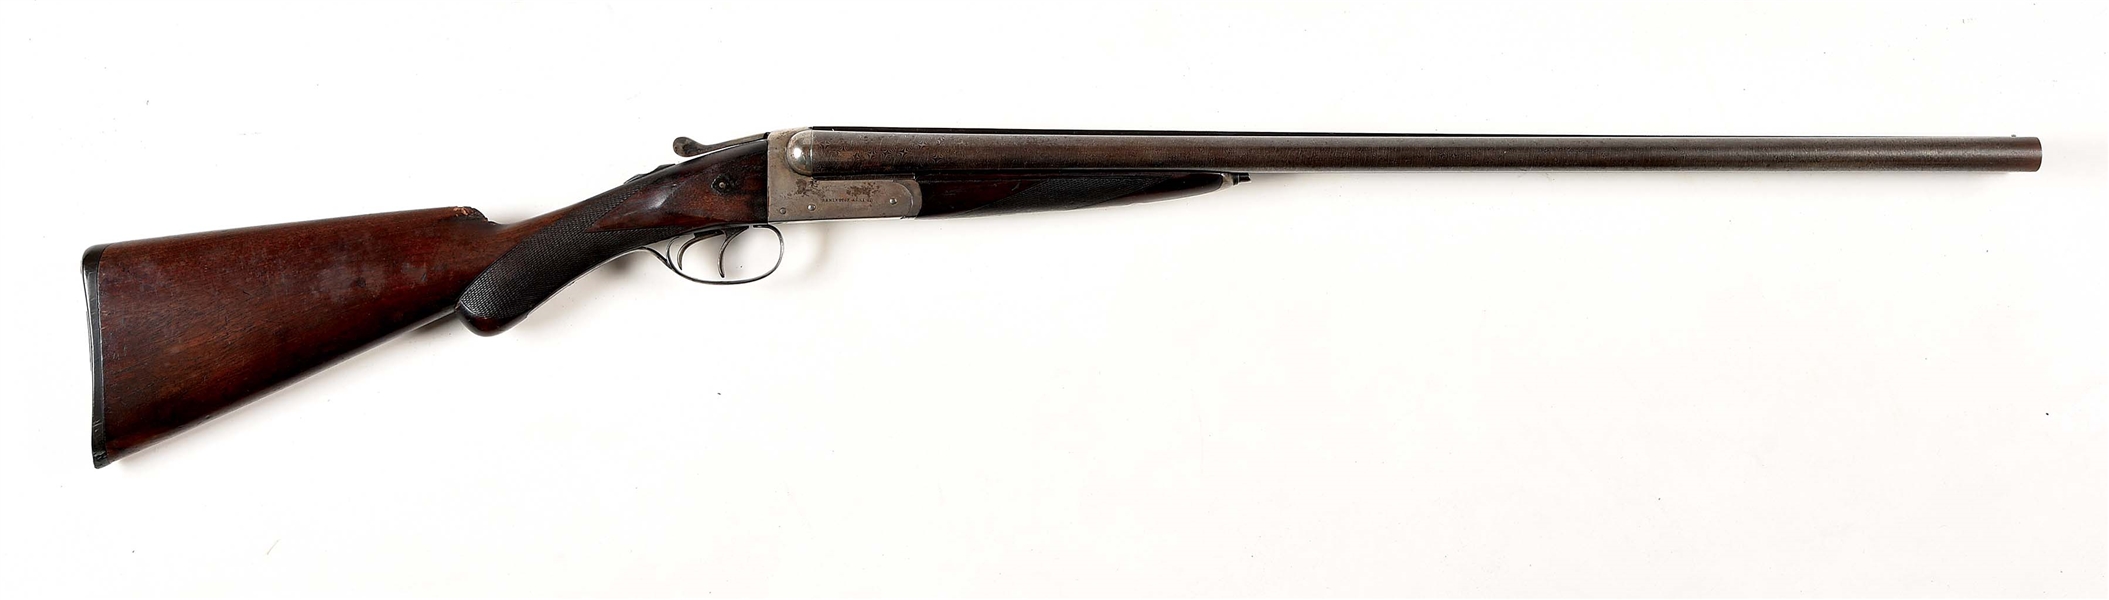 (C) REMINGTON MODEL 1894 SIDE BY SIDE 12 GAUGE SHOTGUN.